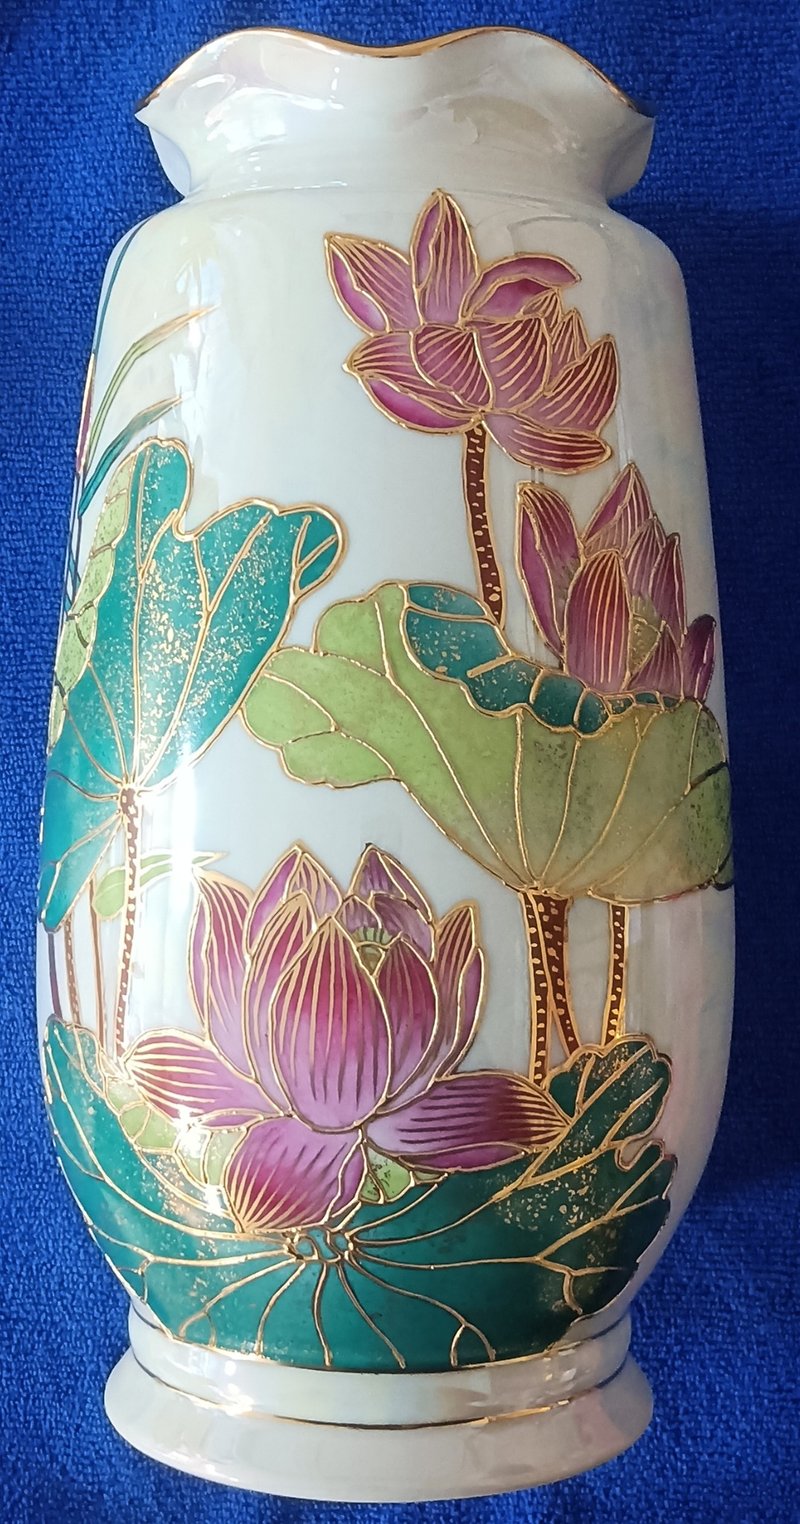 【絵花瓶】10寸彫金太蓮花瓶 - 花瓶・植木鉢 - 磁器 